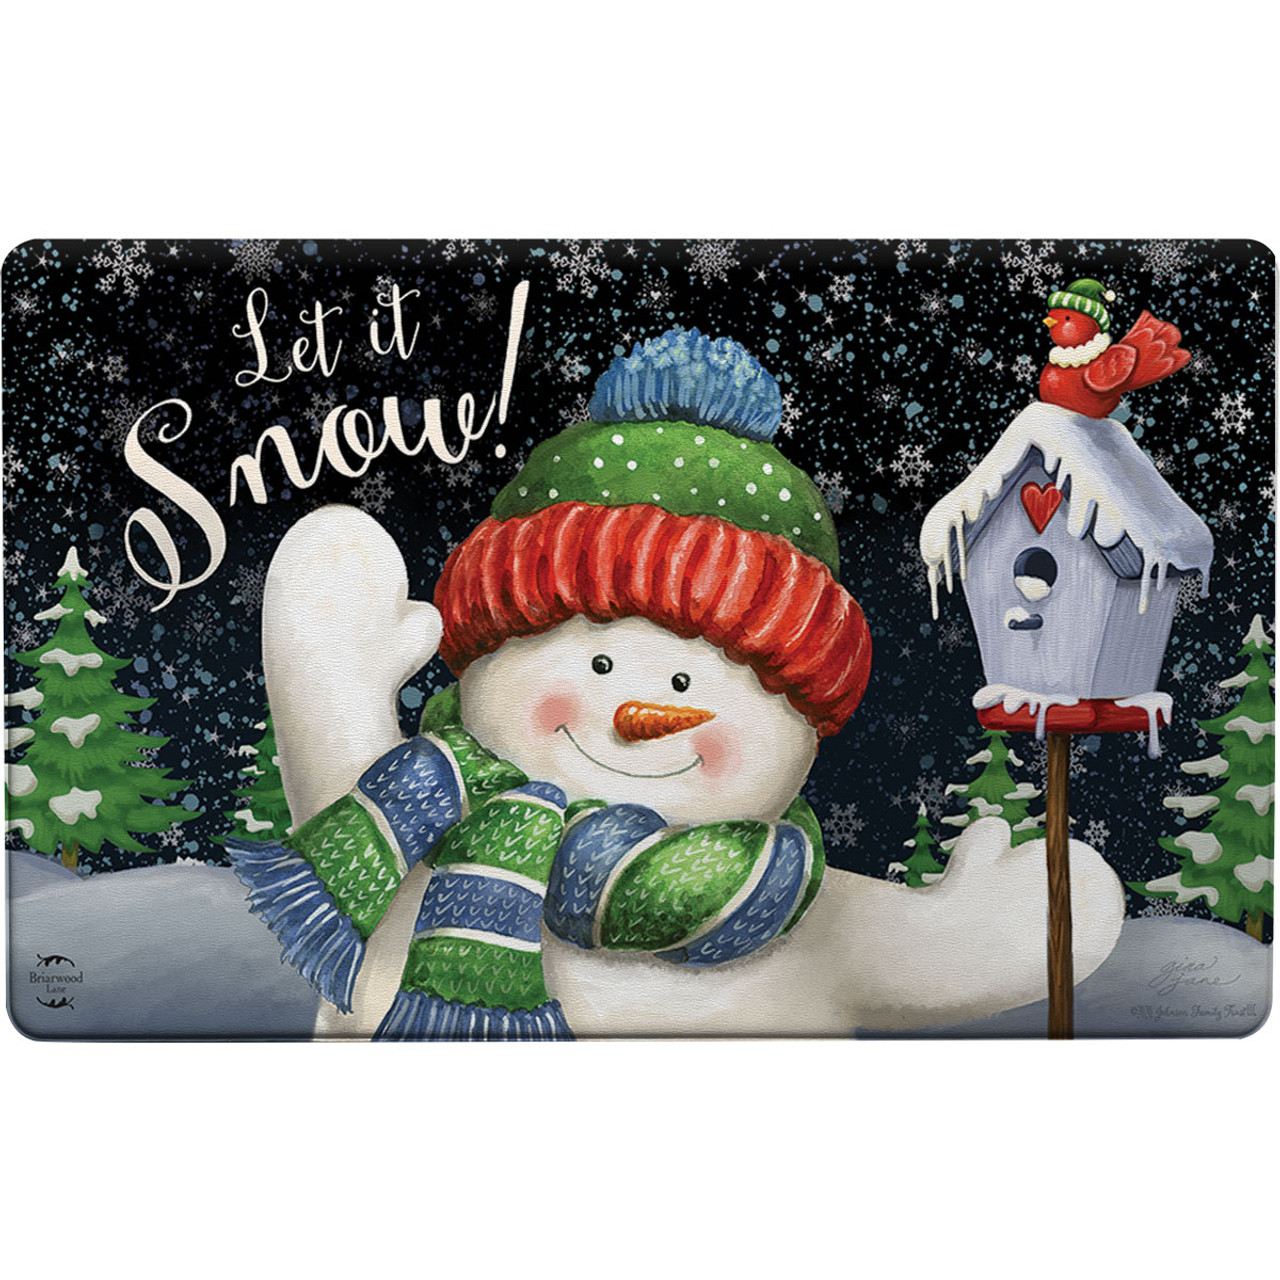 Briarwood Lane American Snowmen Winter Doormat Welcome Indoor/Outdoor 30 x 18